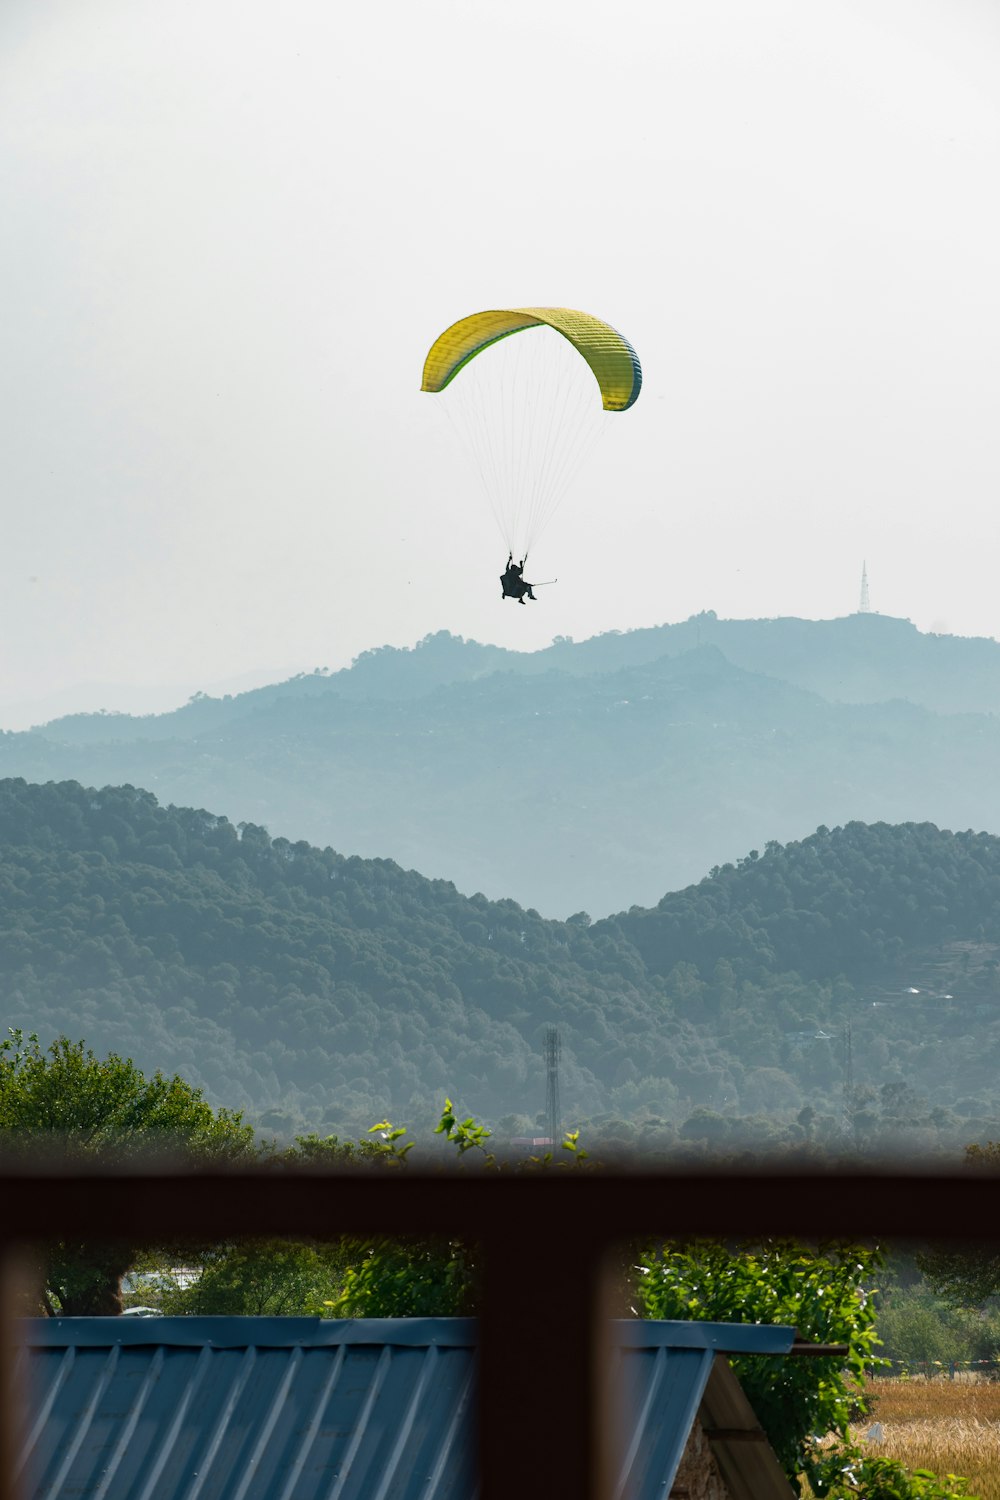 Persona che cavalca il paracadute giallo sulle montagne verdi durante il giorno